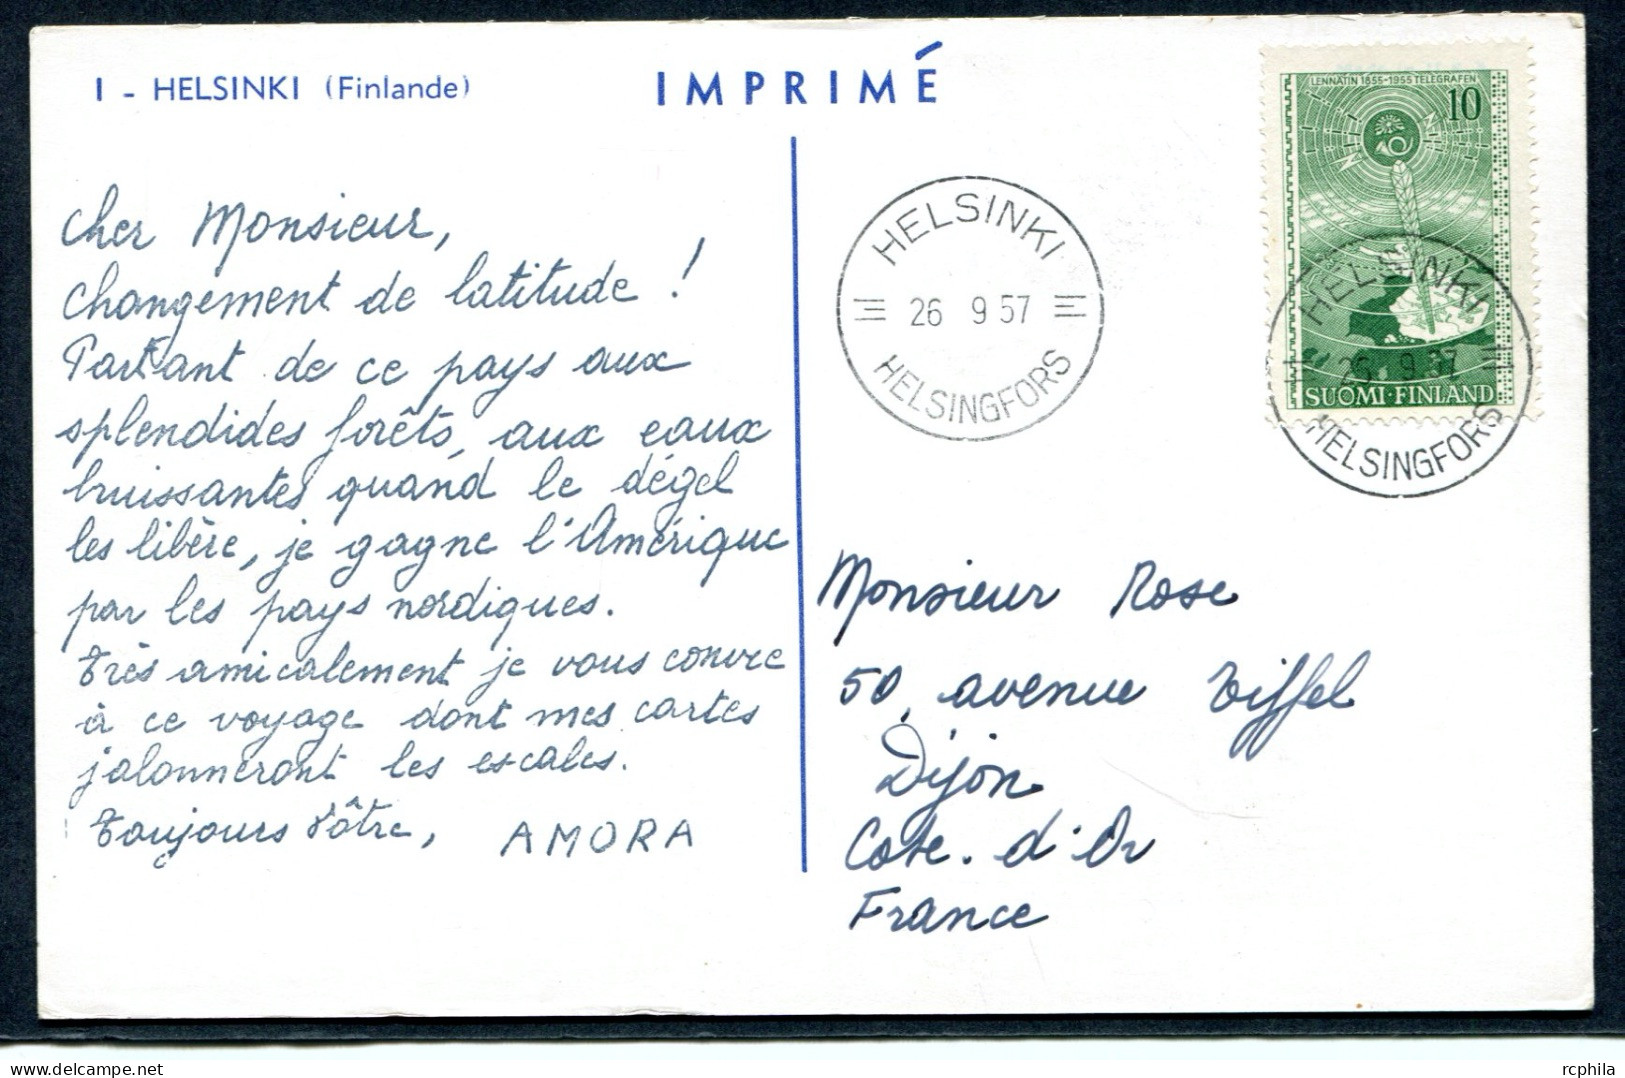 RC 27341 FINLANDE 1957 CROISIERE AMORA CARTE PUBLICITAIRE POUR DIJON COTE D'OR FRANCE - Covers & Documents